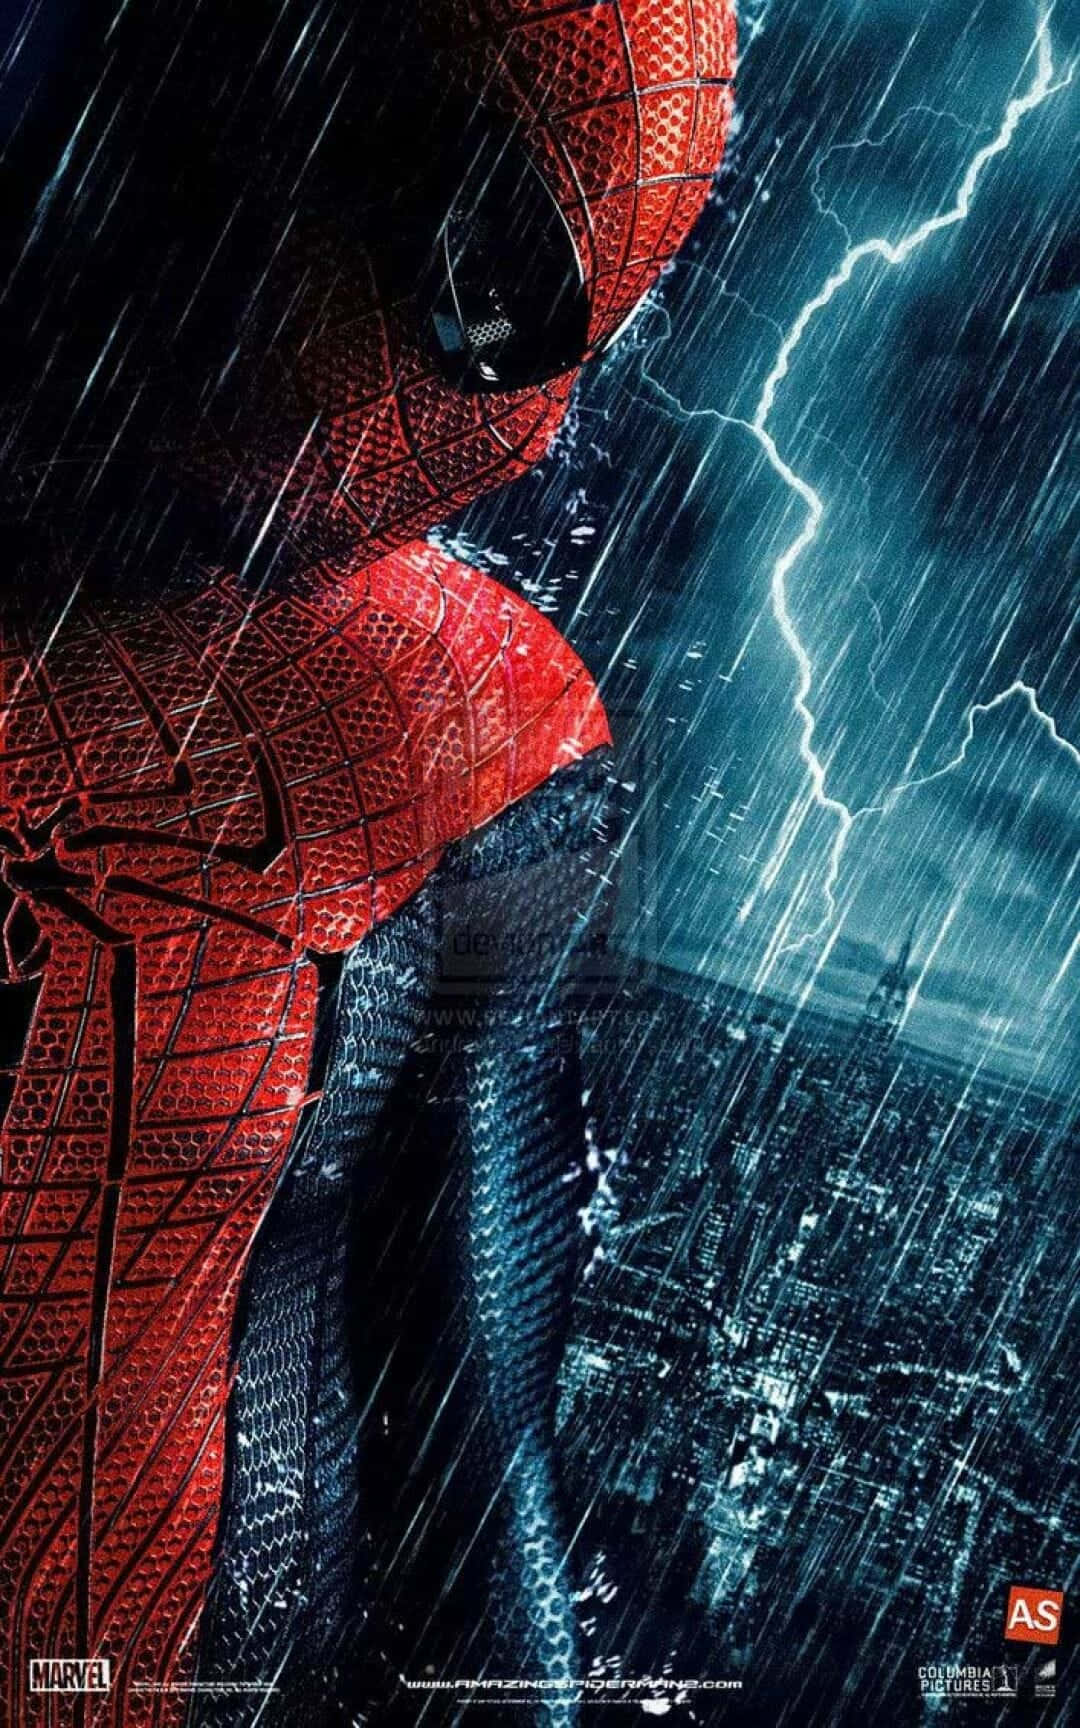 Wallpaperfå Obegränsad Underhållning Med Amazing Spider Man-inspirerad Iphone-bakgrundsbild. Wallpaper